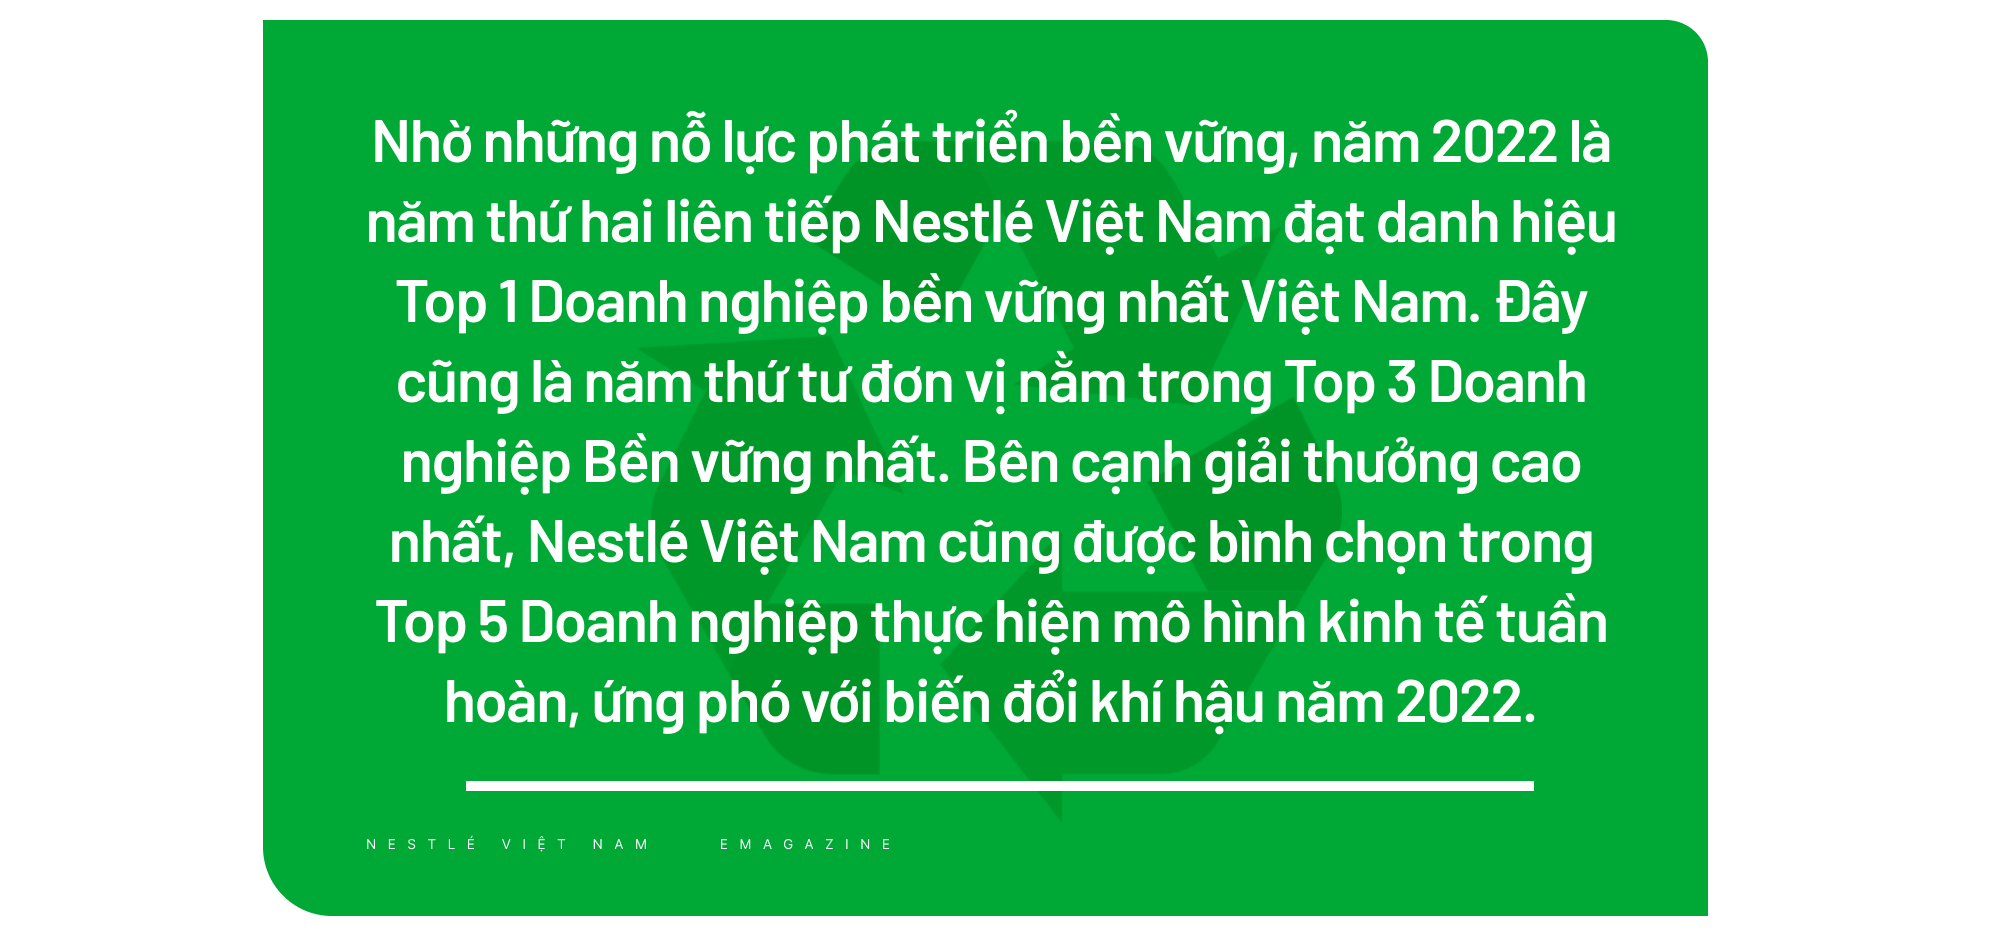 Nestlé Việt Nam áp dụng sáng kiến bao bì bền vững,xây dựng nền kinh tế tuần hoàn - Ảnh 8.